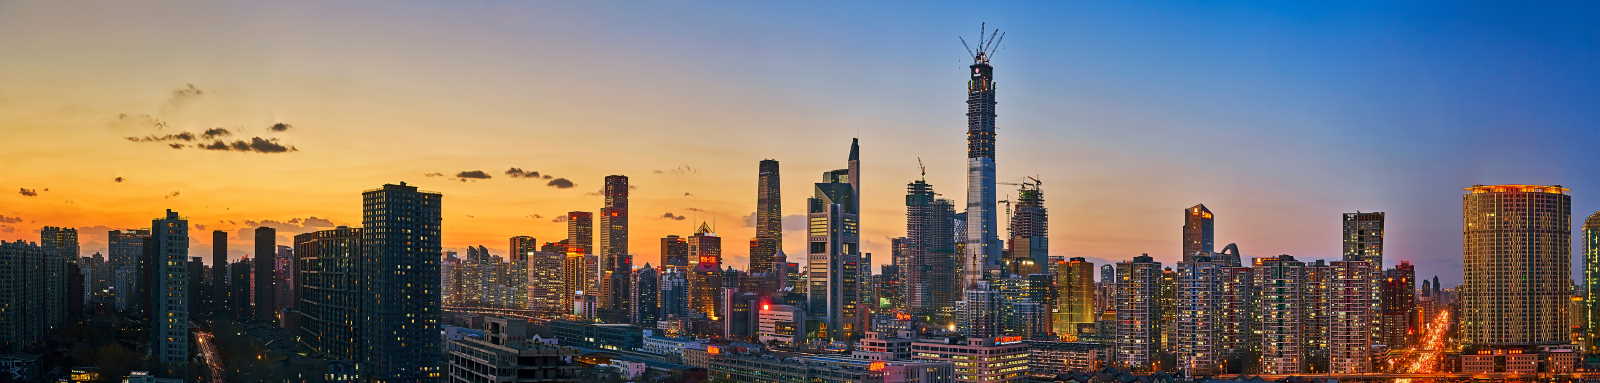 Beijing city skyline at dusk